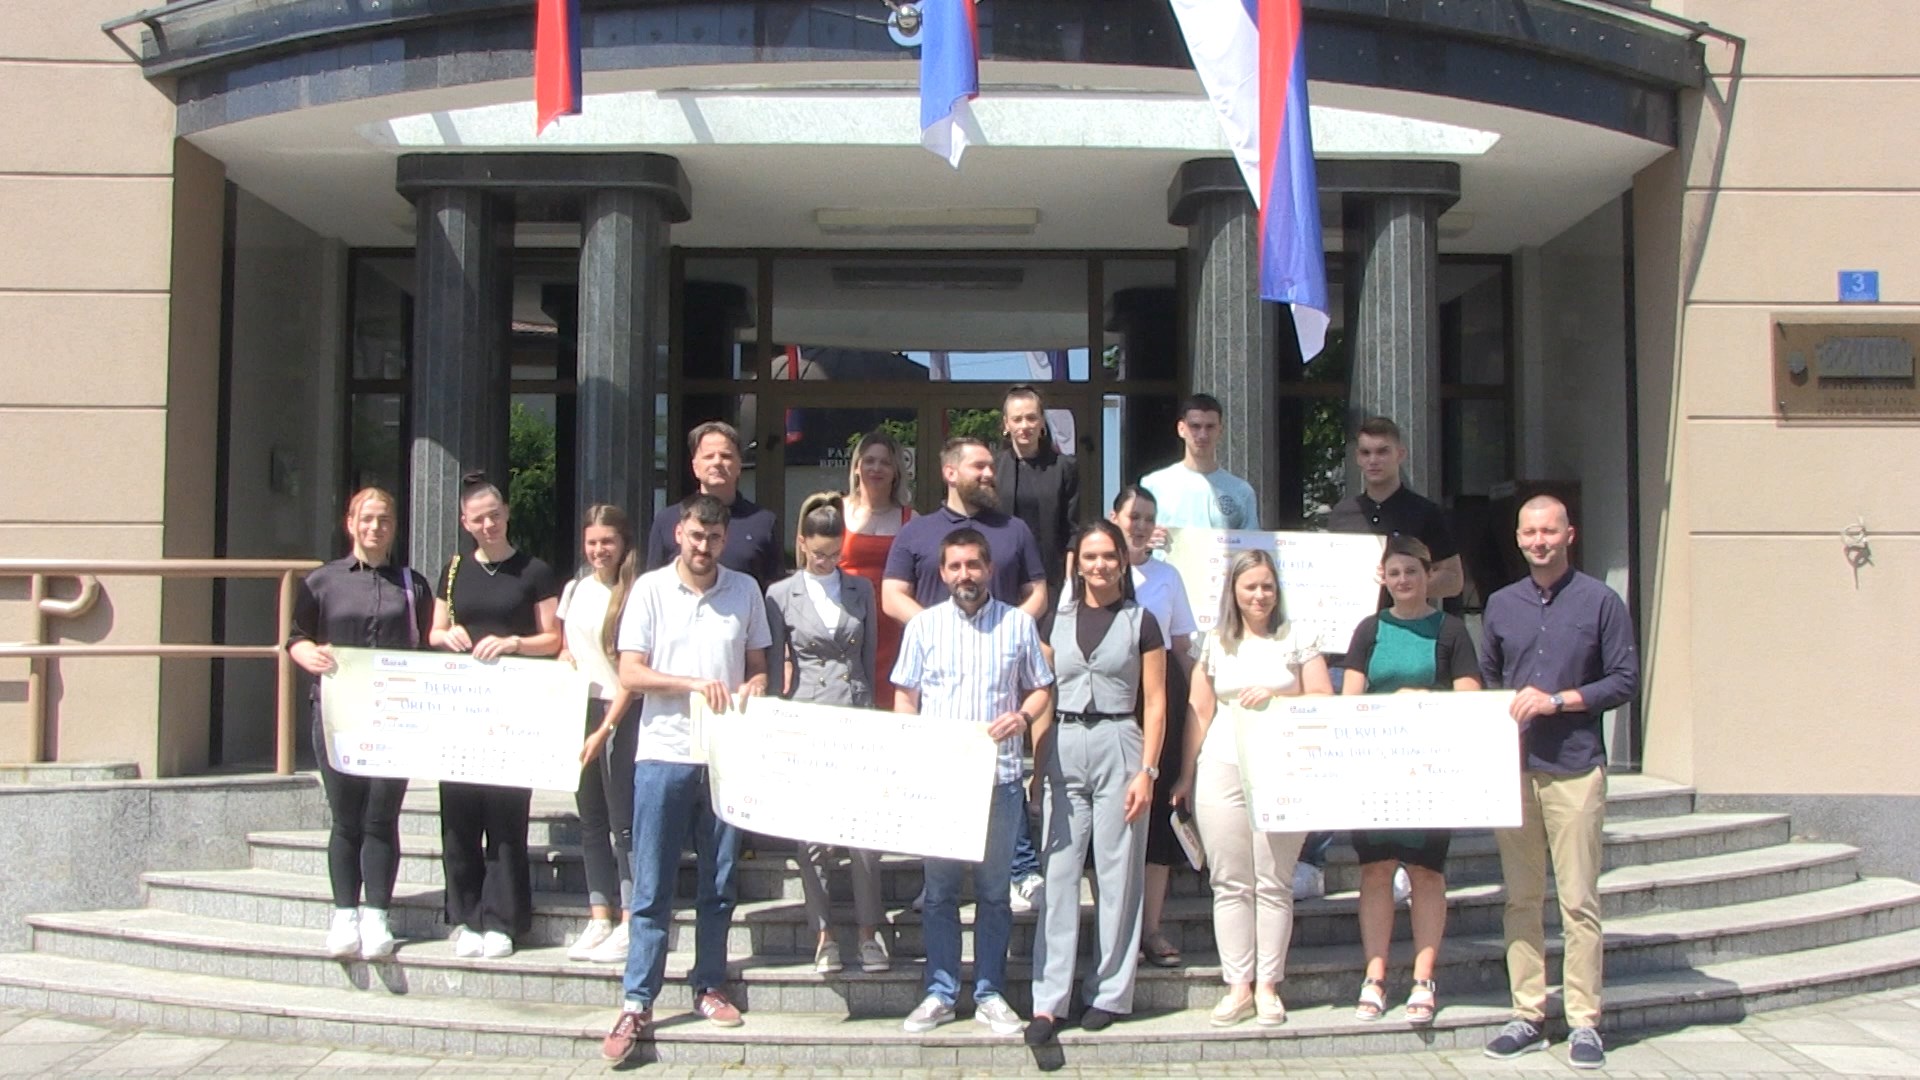 Omladinska banka i grad Derventa podržali četiri nova projekata mladih (FOTO/VIDEO)